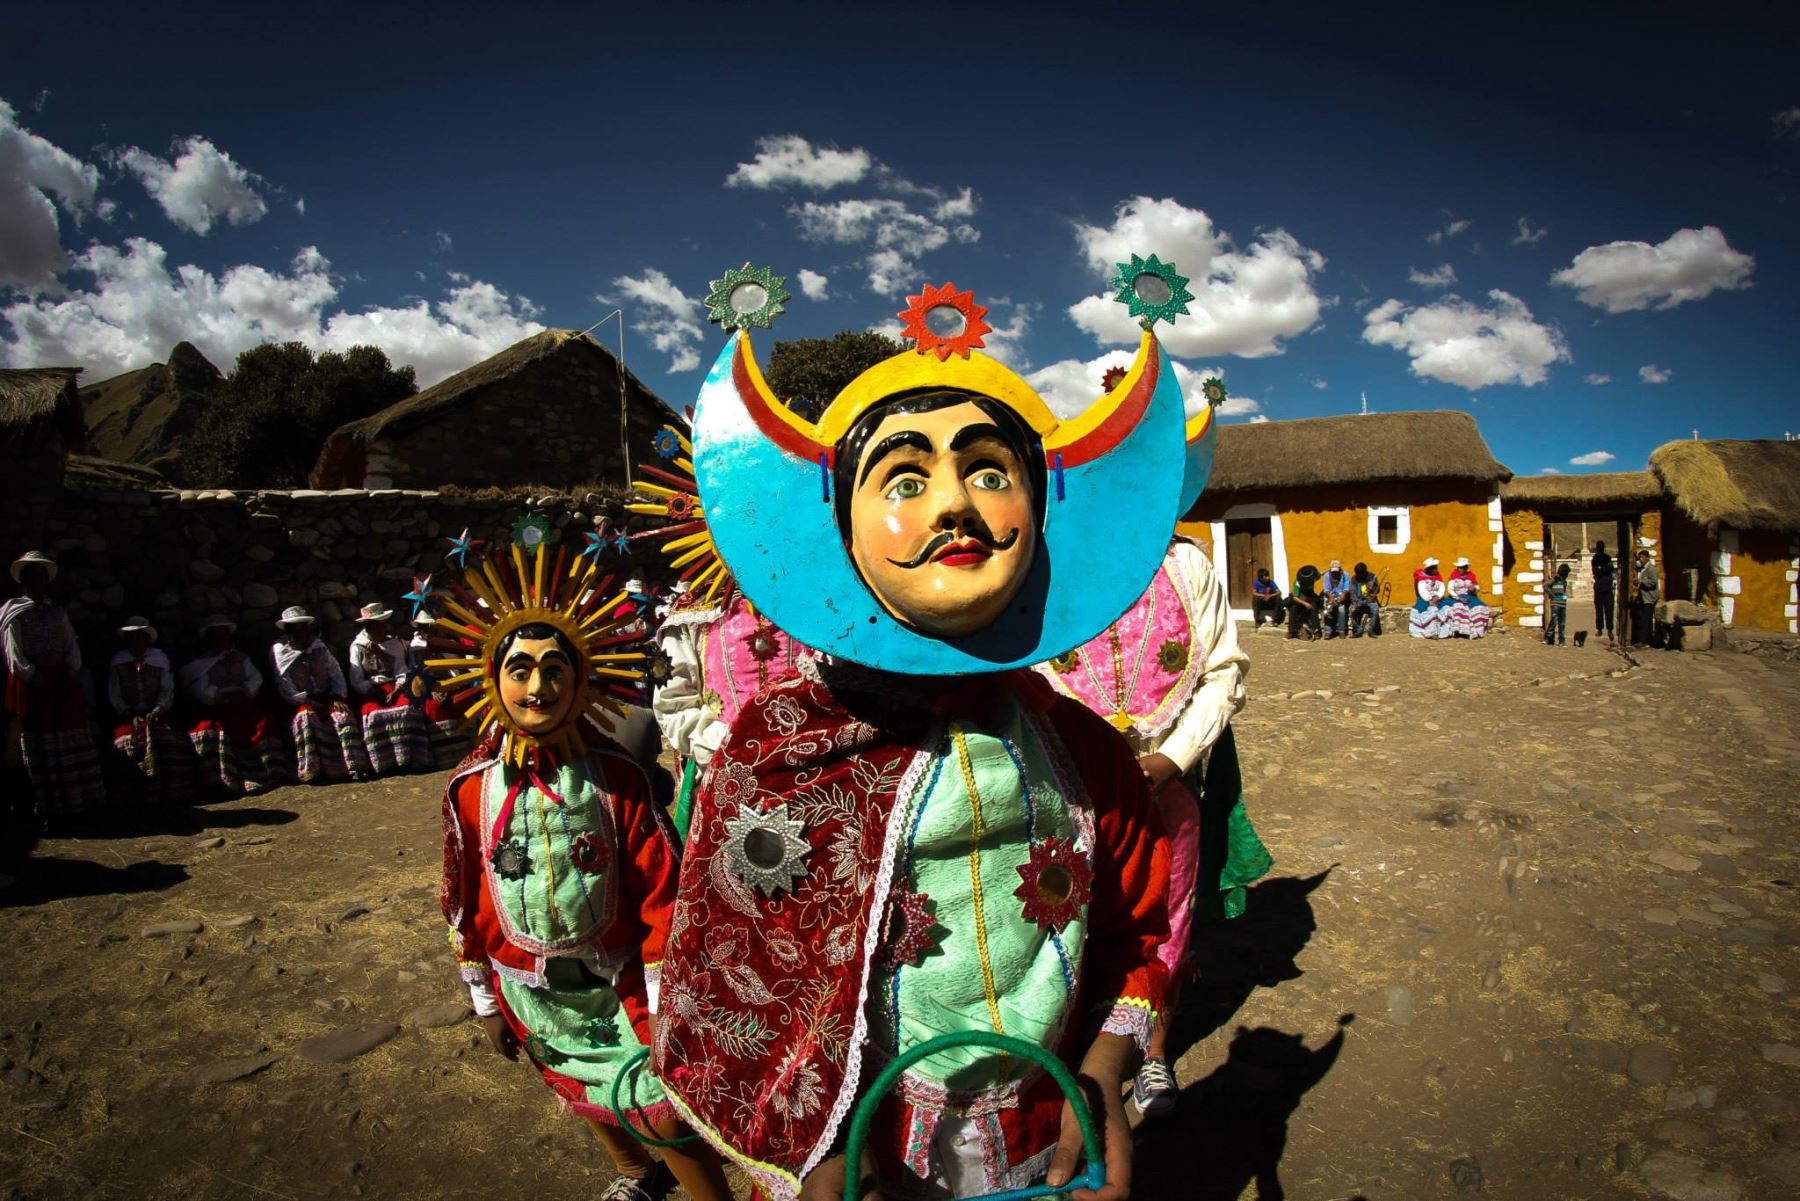 Sibayo en Arequipa es una alternativa para disfrutar del turismo vivencial en Arequipa. Foto: Juan Celi.